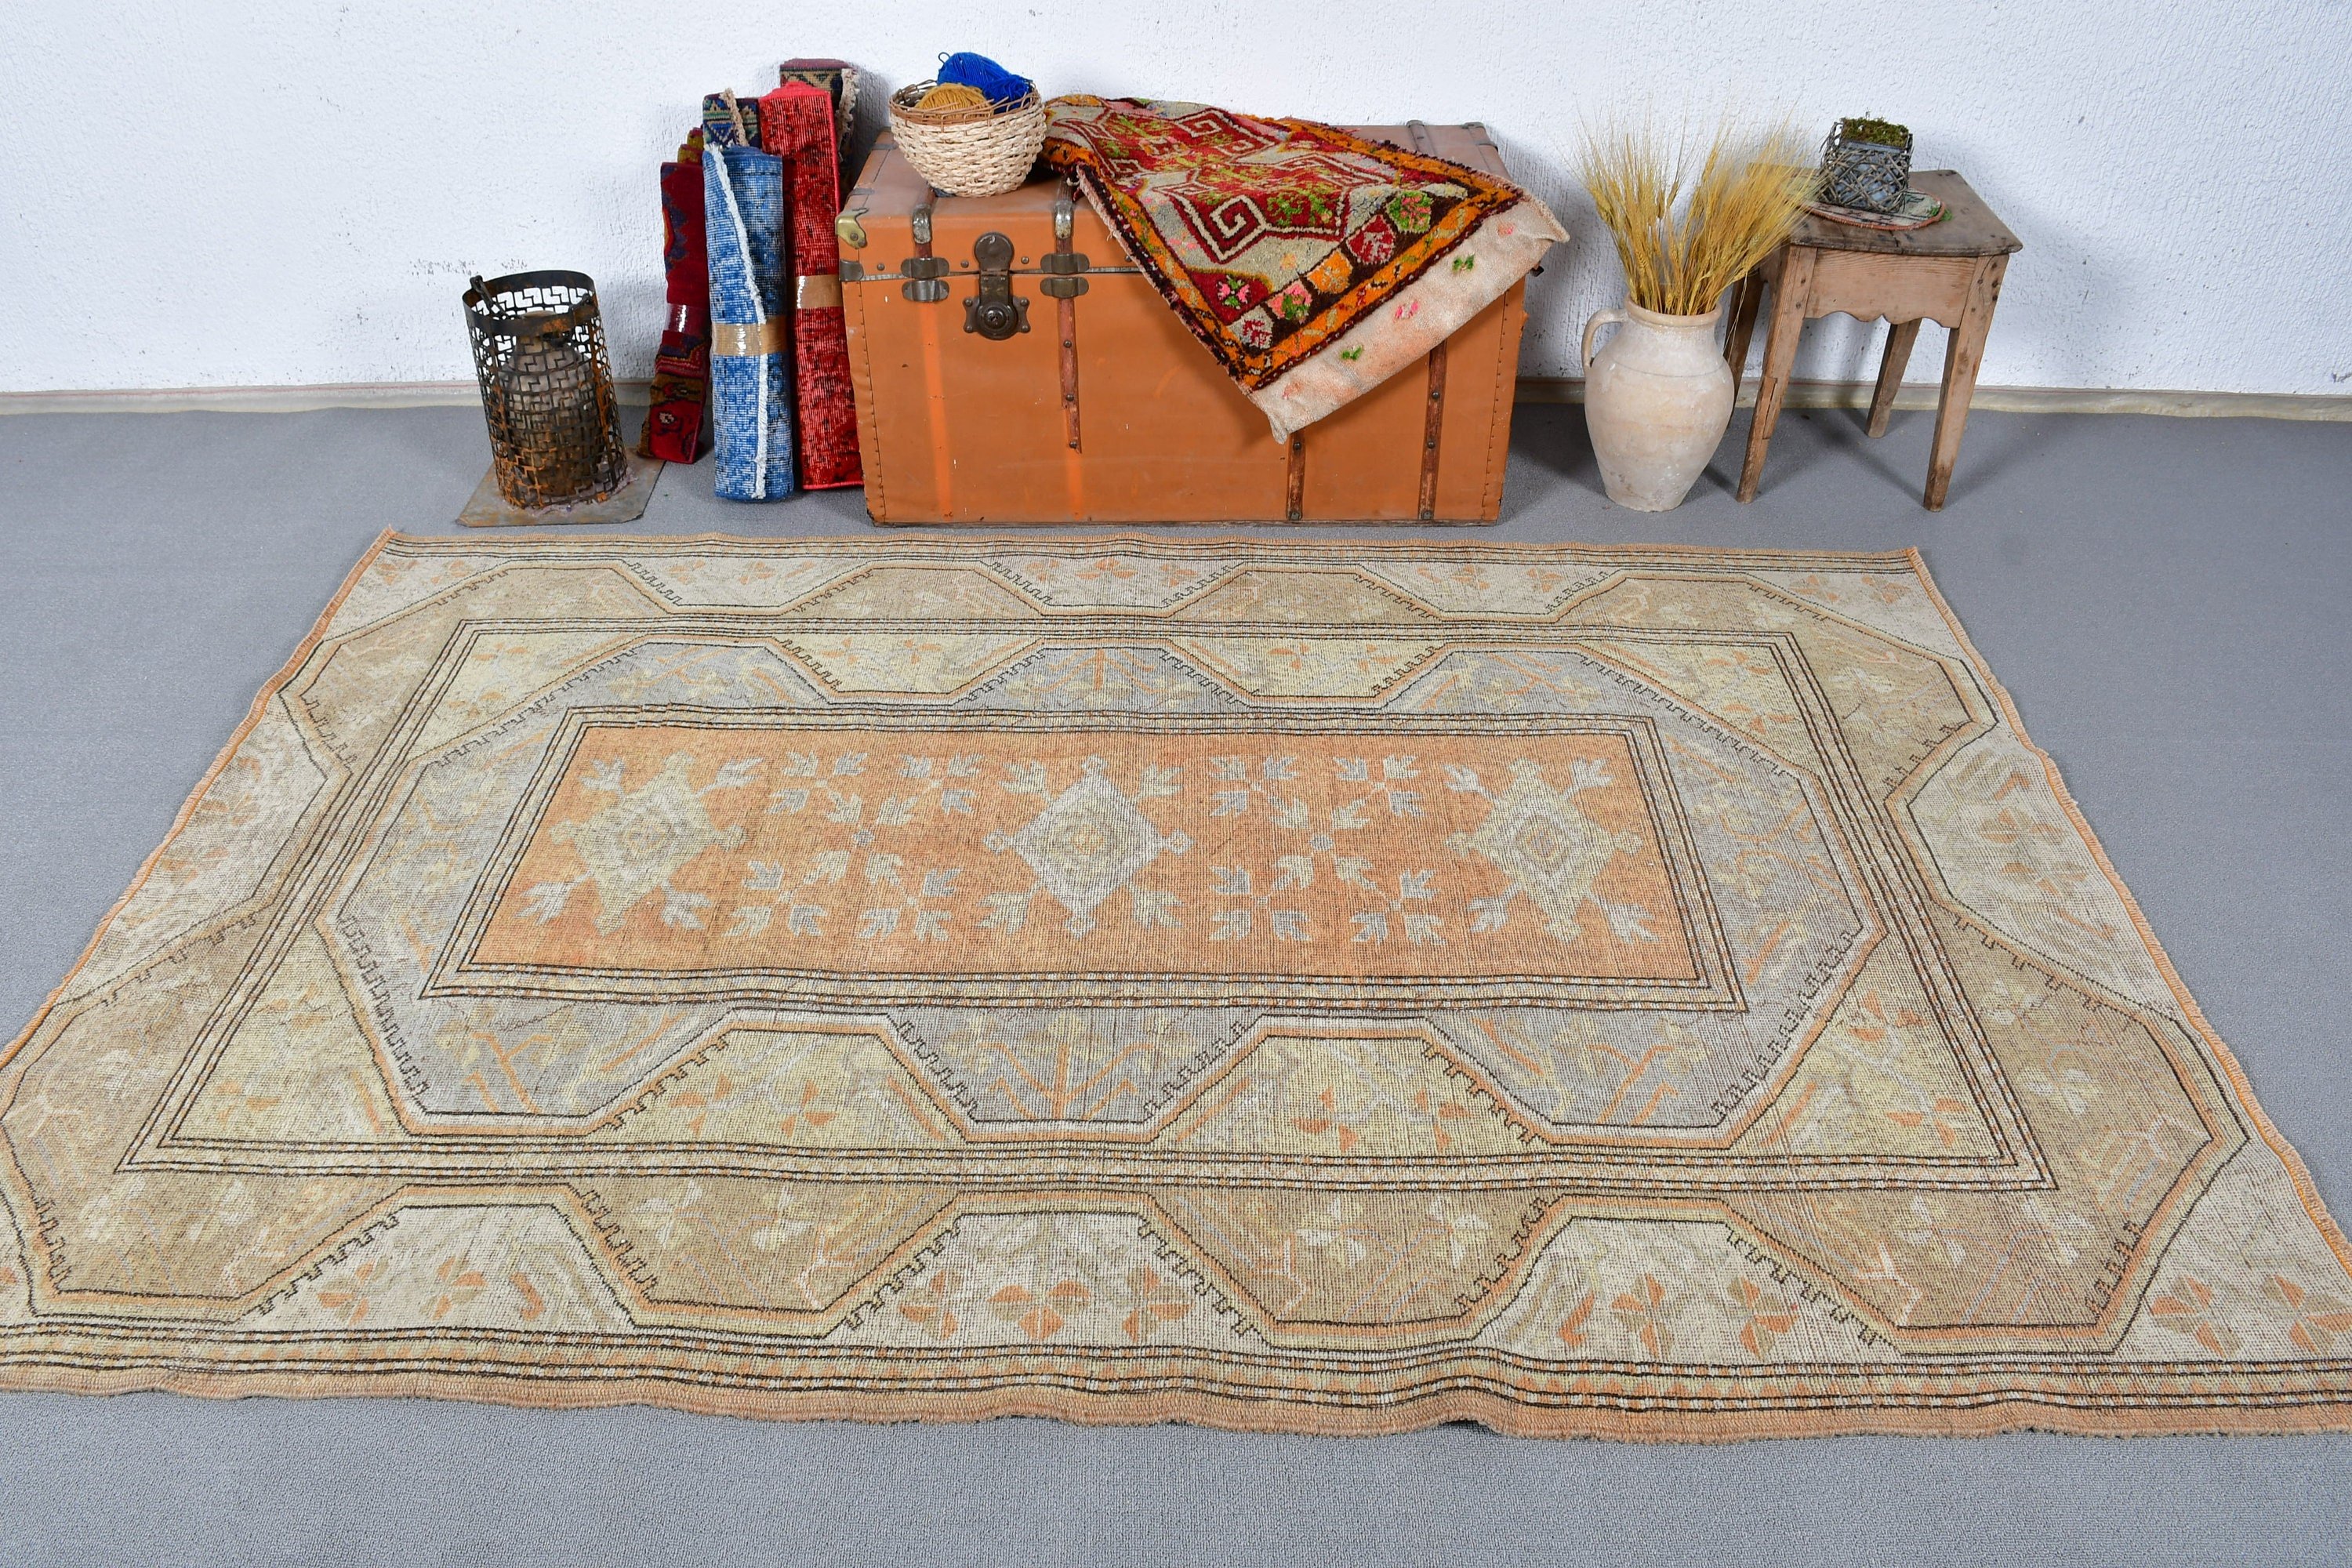 Living Room Rugs, Designer Rug, Turkish Rugs, Vintage Rug, Antique Rug, Moroccan Rug, Orange Floor Rug, 5.2x7.7 ft Large Rug, Bedroom Rugs